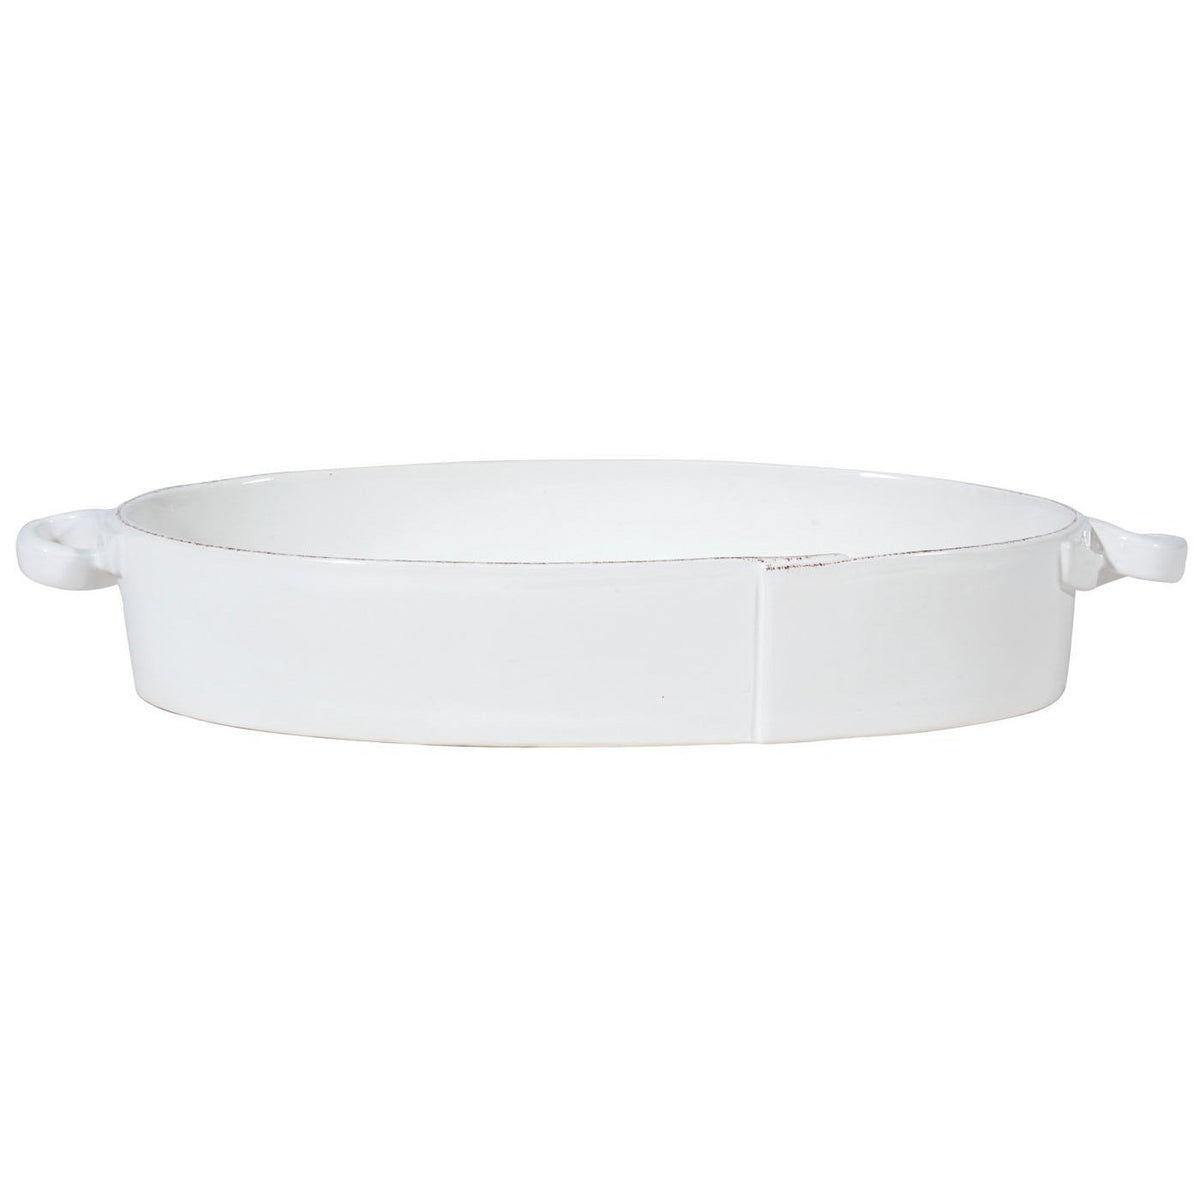 VIETRI: Lastra White Handled Oval Baker - Artistica.com